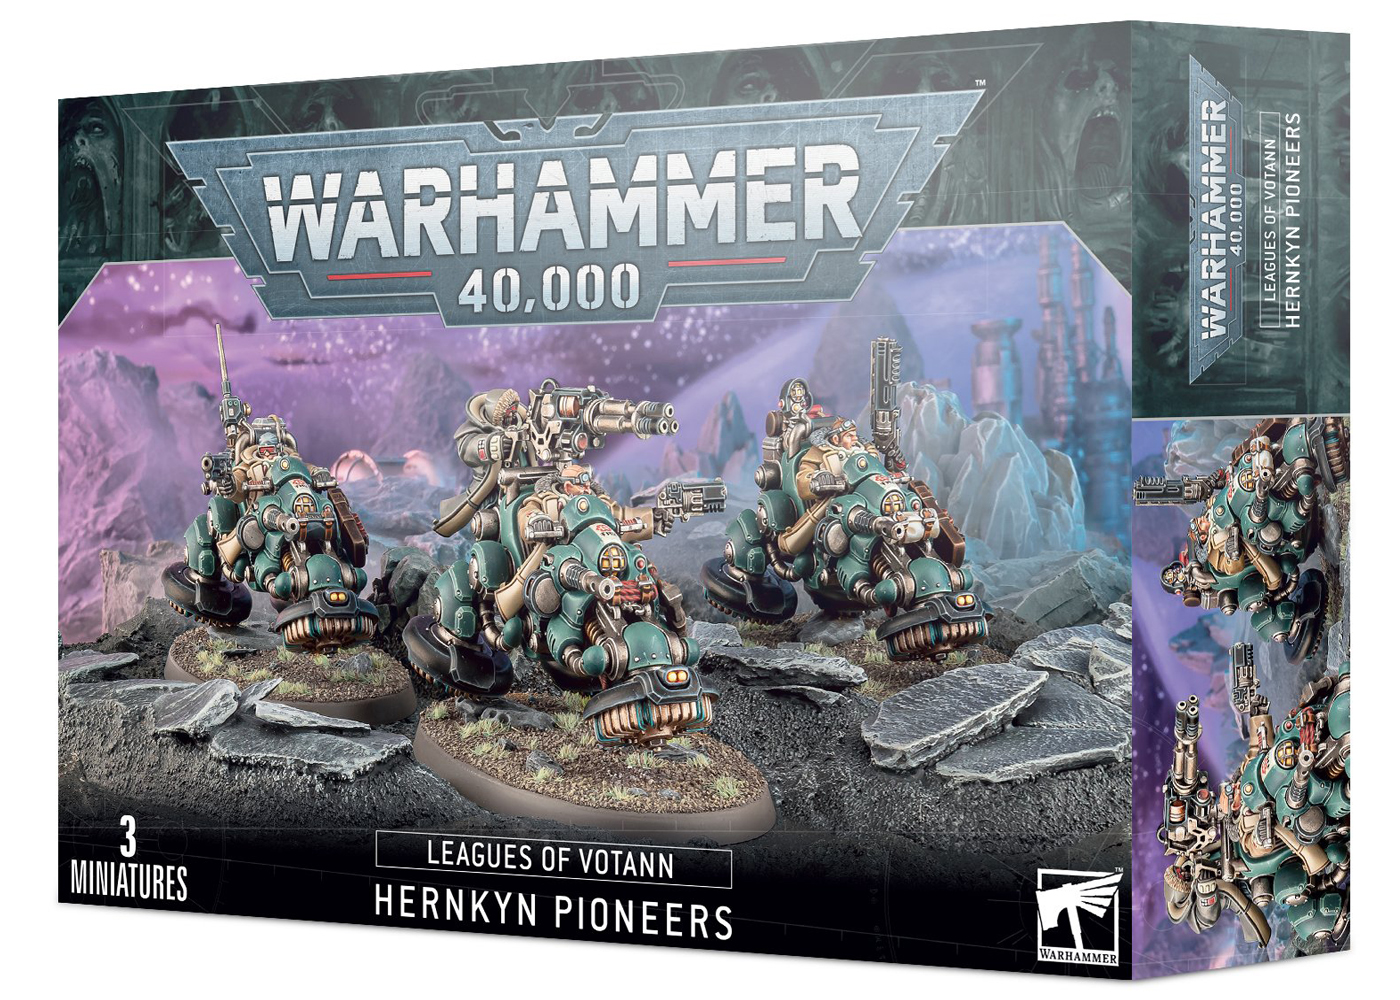 Warhammer 40K: Leagues of Votann Hernkyn Pioneers - Everything